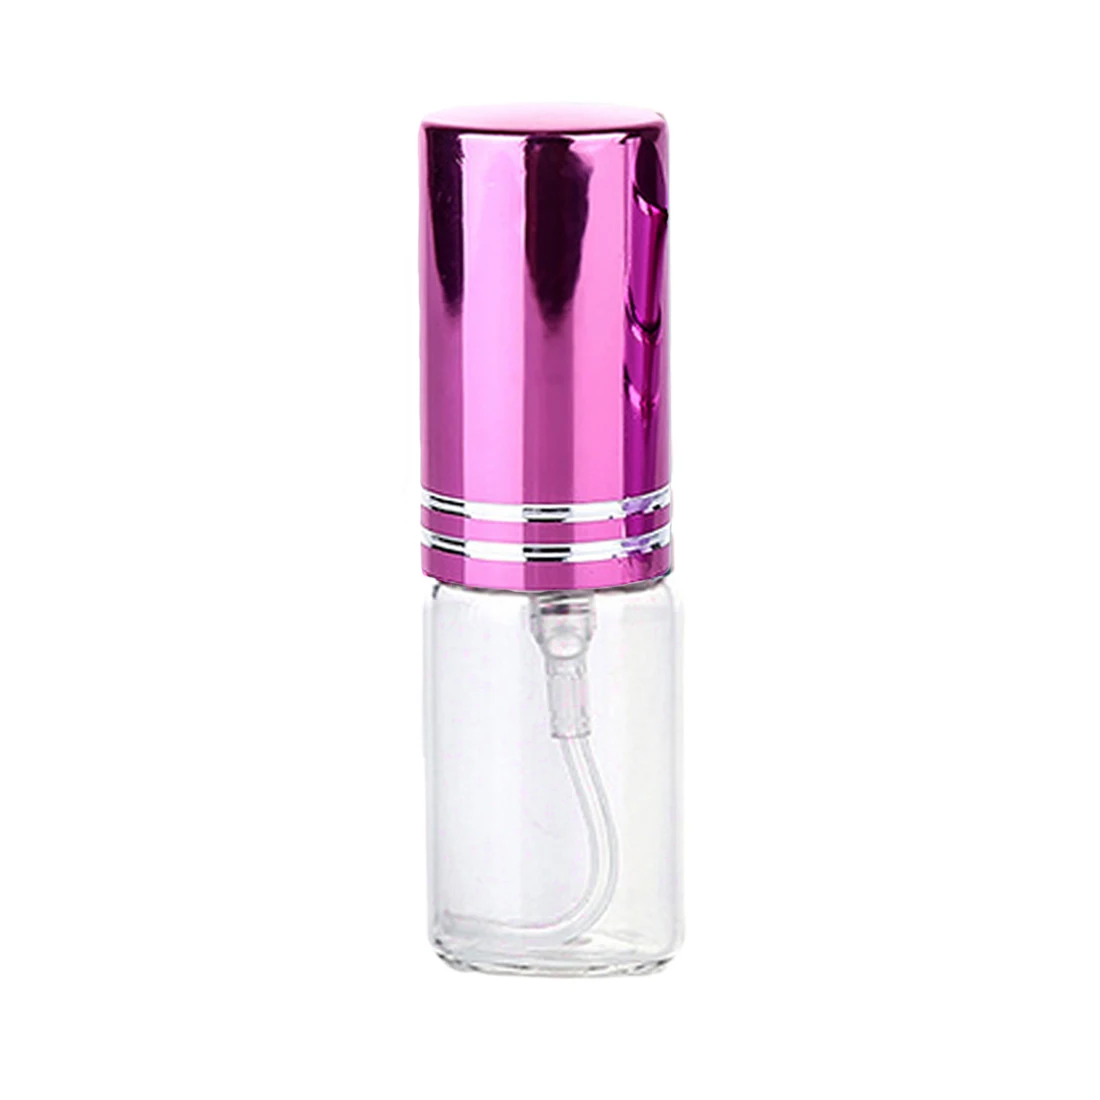 5 мл косметический образец парфюма маленький образец Дозирующий Алюминиевый распылитель мини ультра-тонкий противотуманный стеклянный прессованный флакон - Цвет: pink